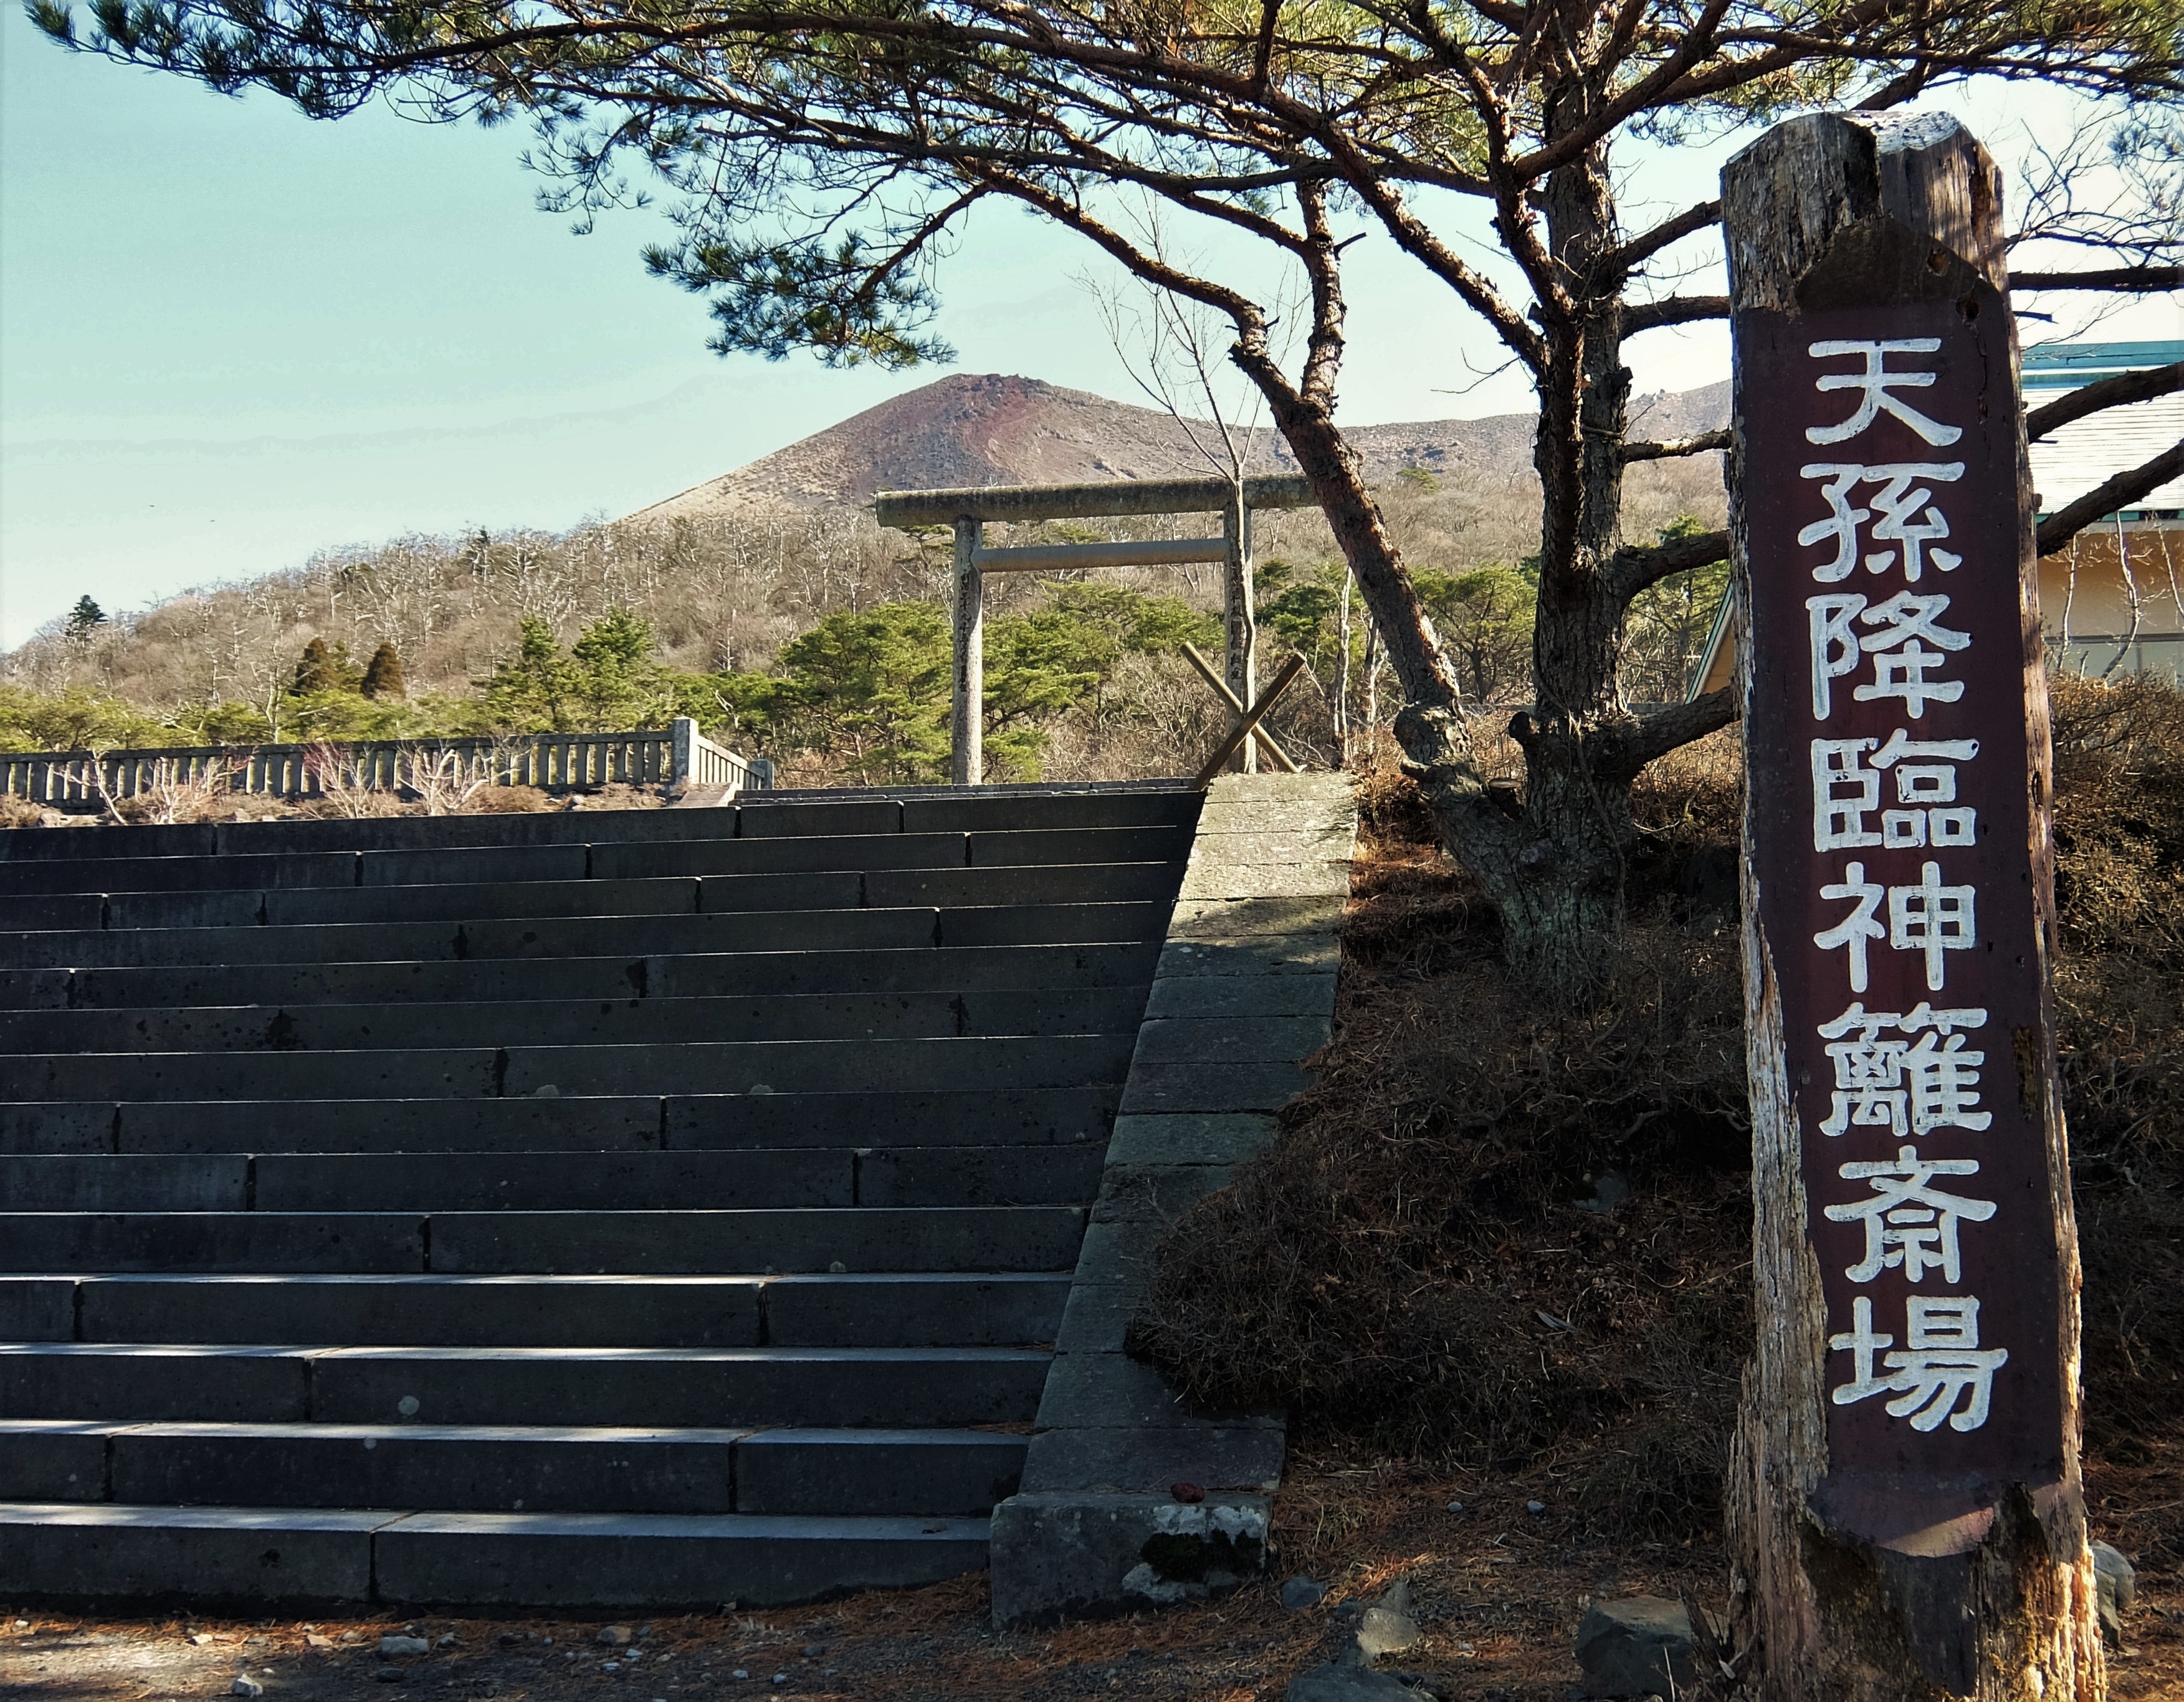 立神という謎 天孫降臨神話と神武東征神話に隠されたもの 神秘と感動の絶景を探し歩いて Beautiful Superb View Of Japan